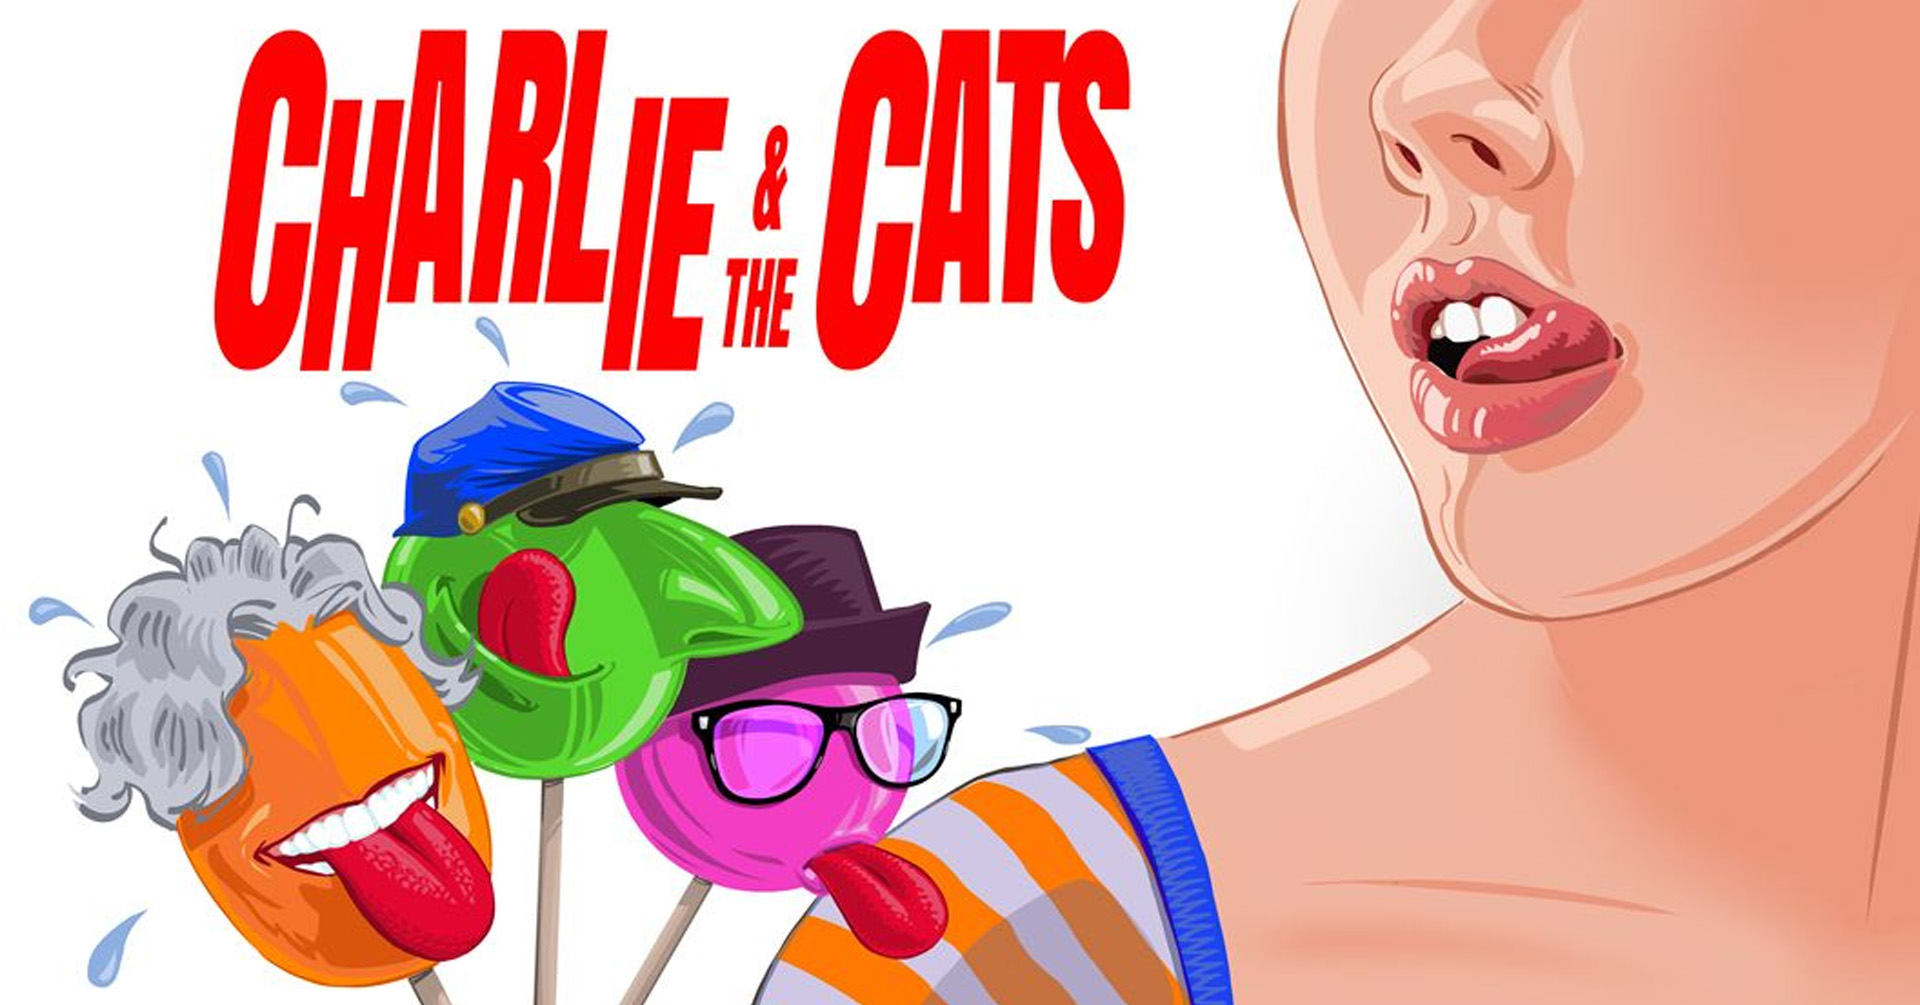 Il grande ritorno dei Charlie & the cats